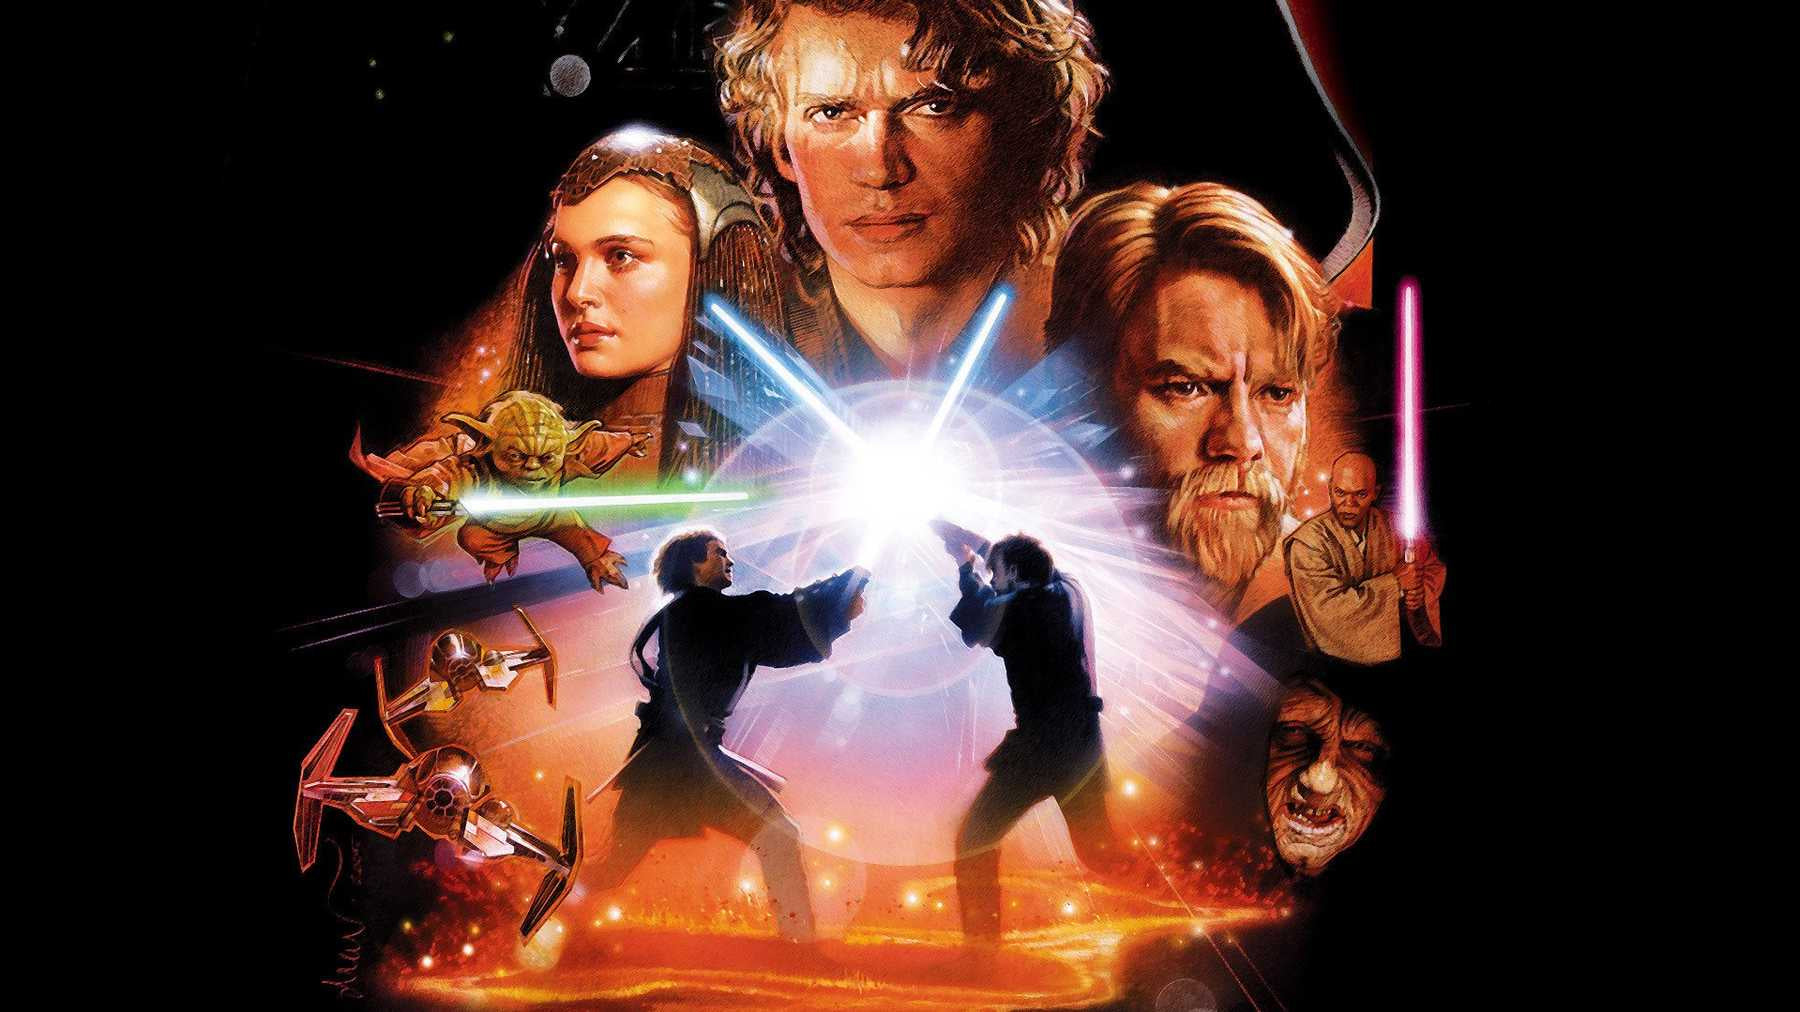 Star Wars: Prequel Trilogy - Episodes I-III